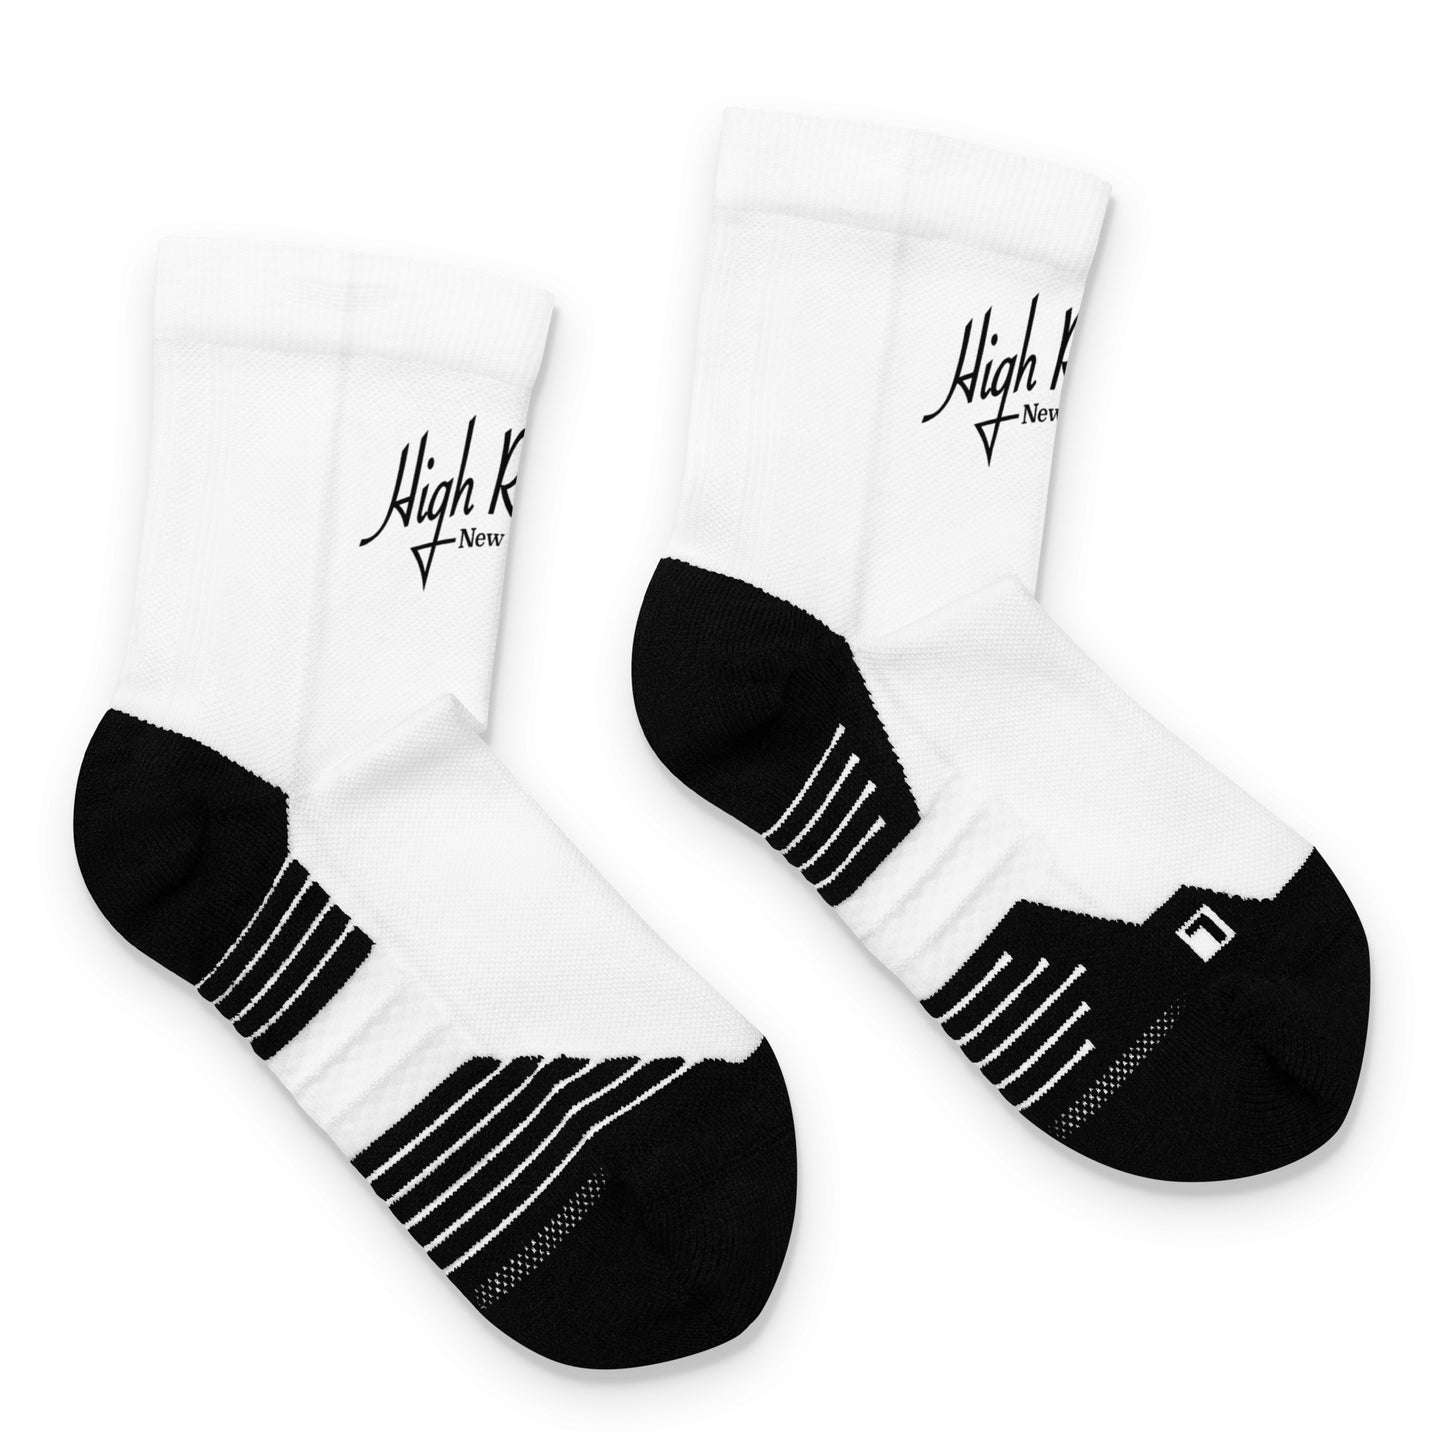 High Roller Co. Ankle socks